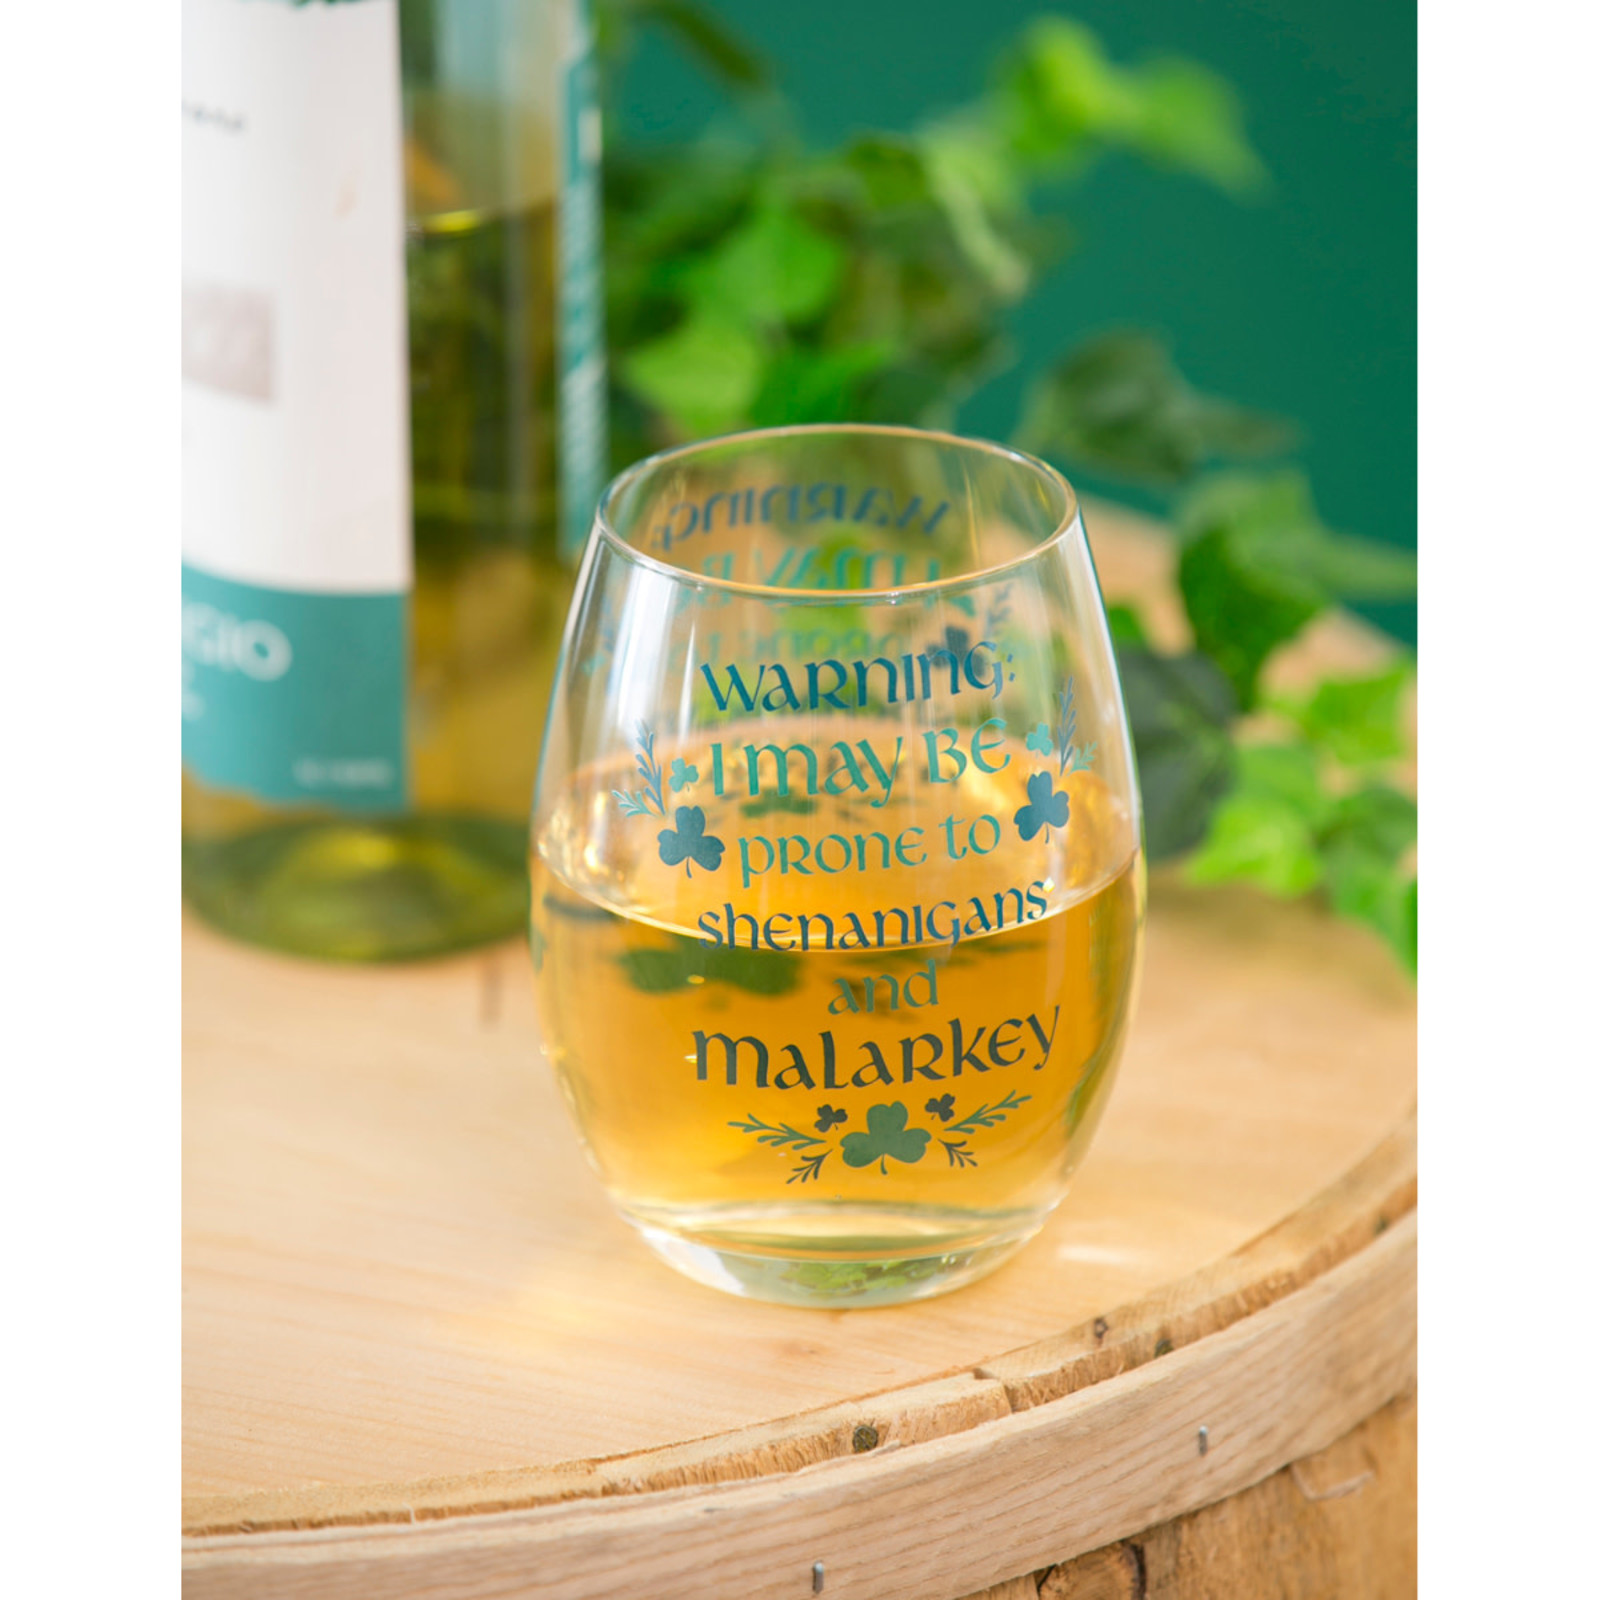 Evergreen Enterprises Wine Glass/Celtic Memories loading=